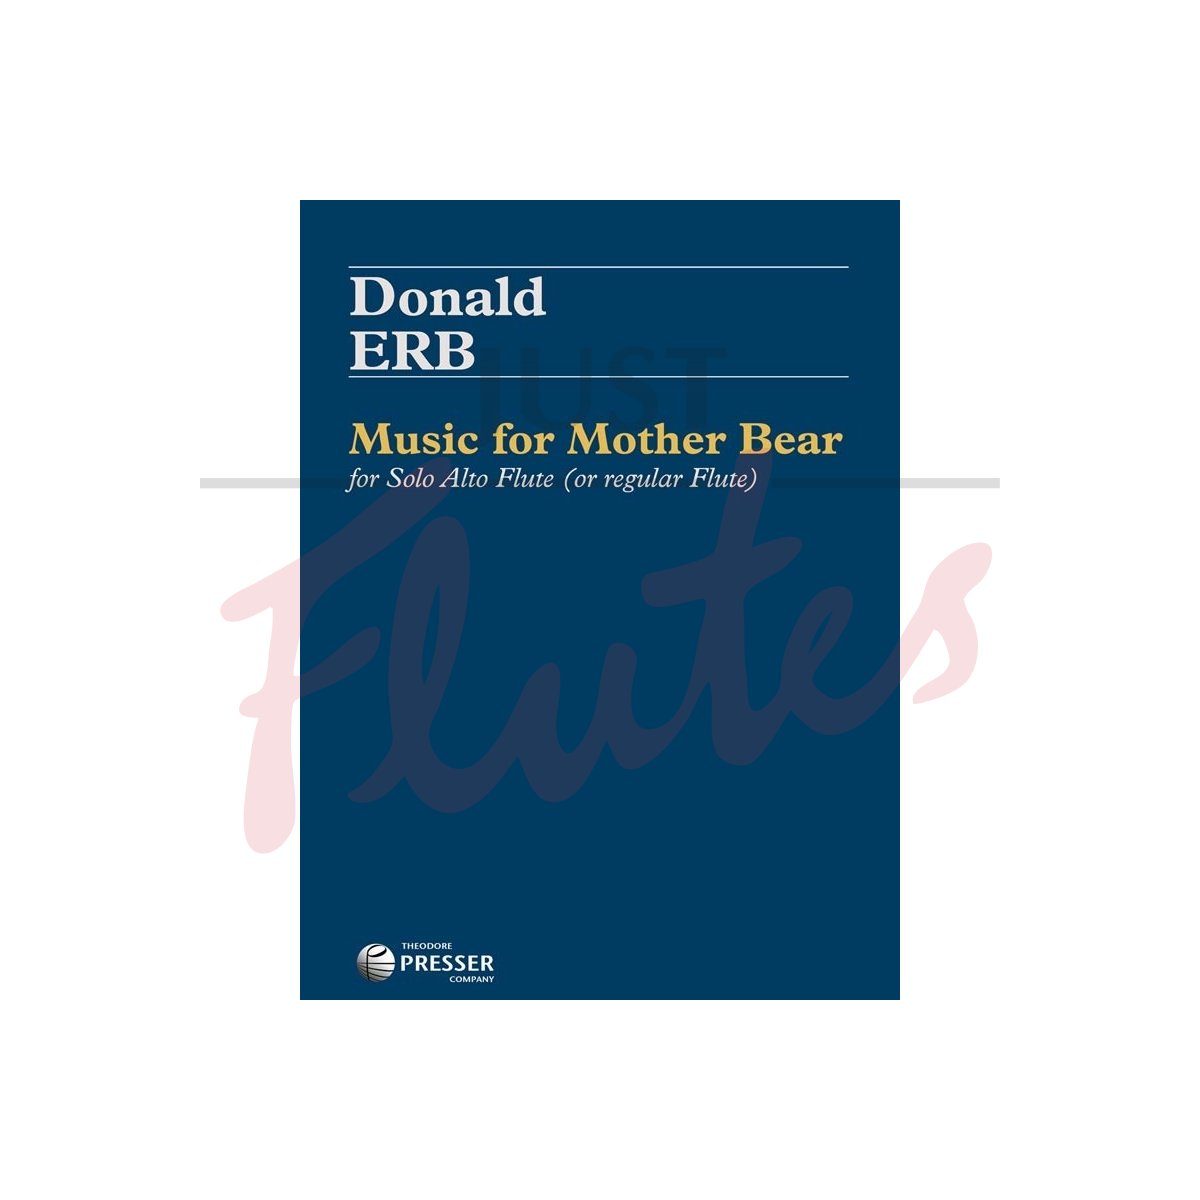 Music for Mother Bear